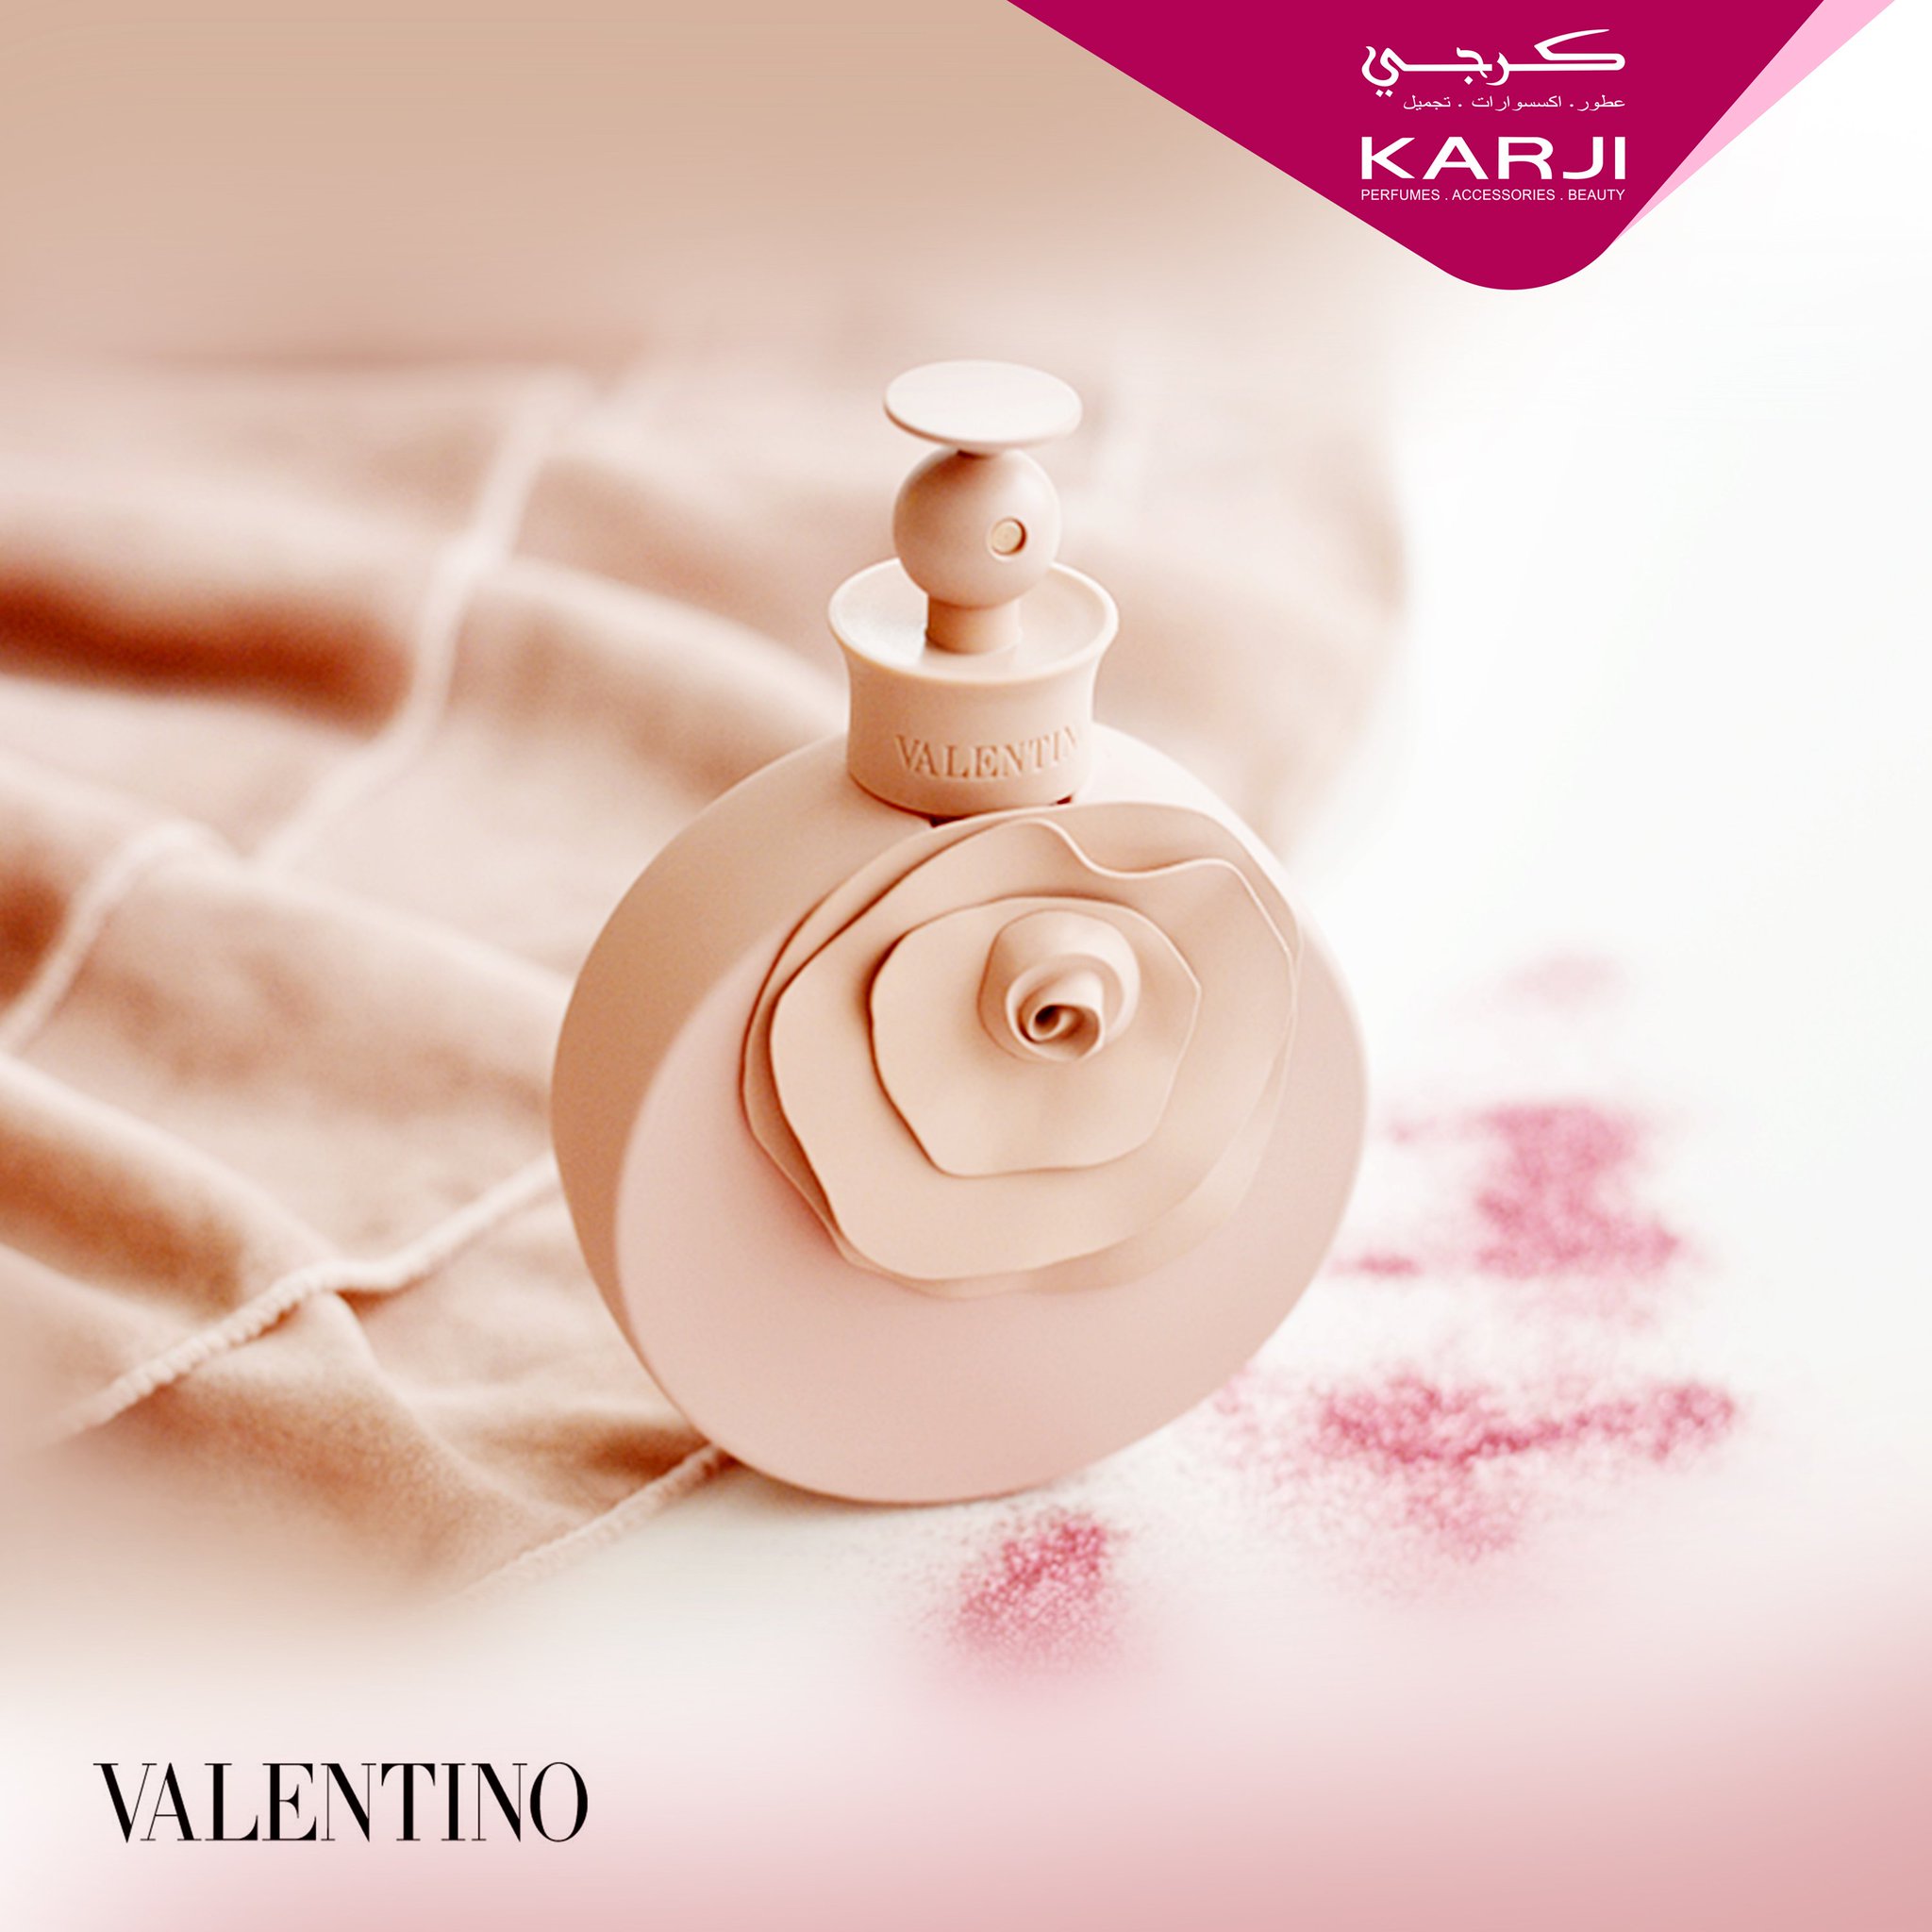 Valentino Valentina Poudre -80ml edp - Perfume, Cologne & Discount Cosmetics